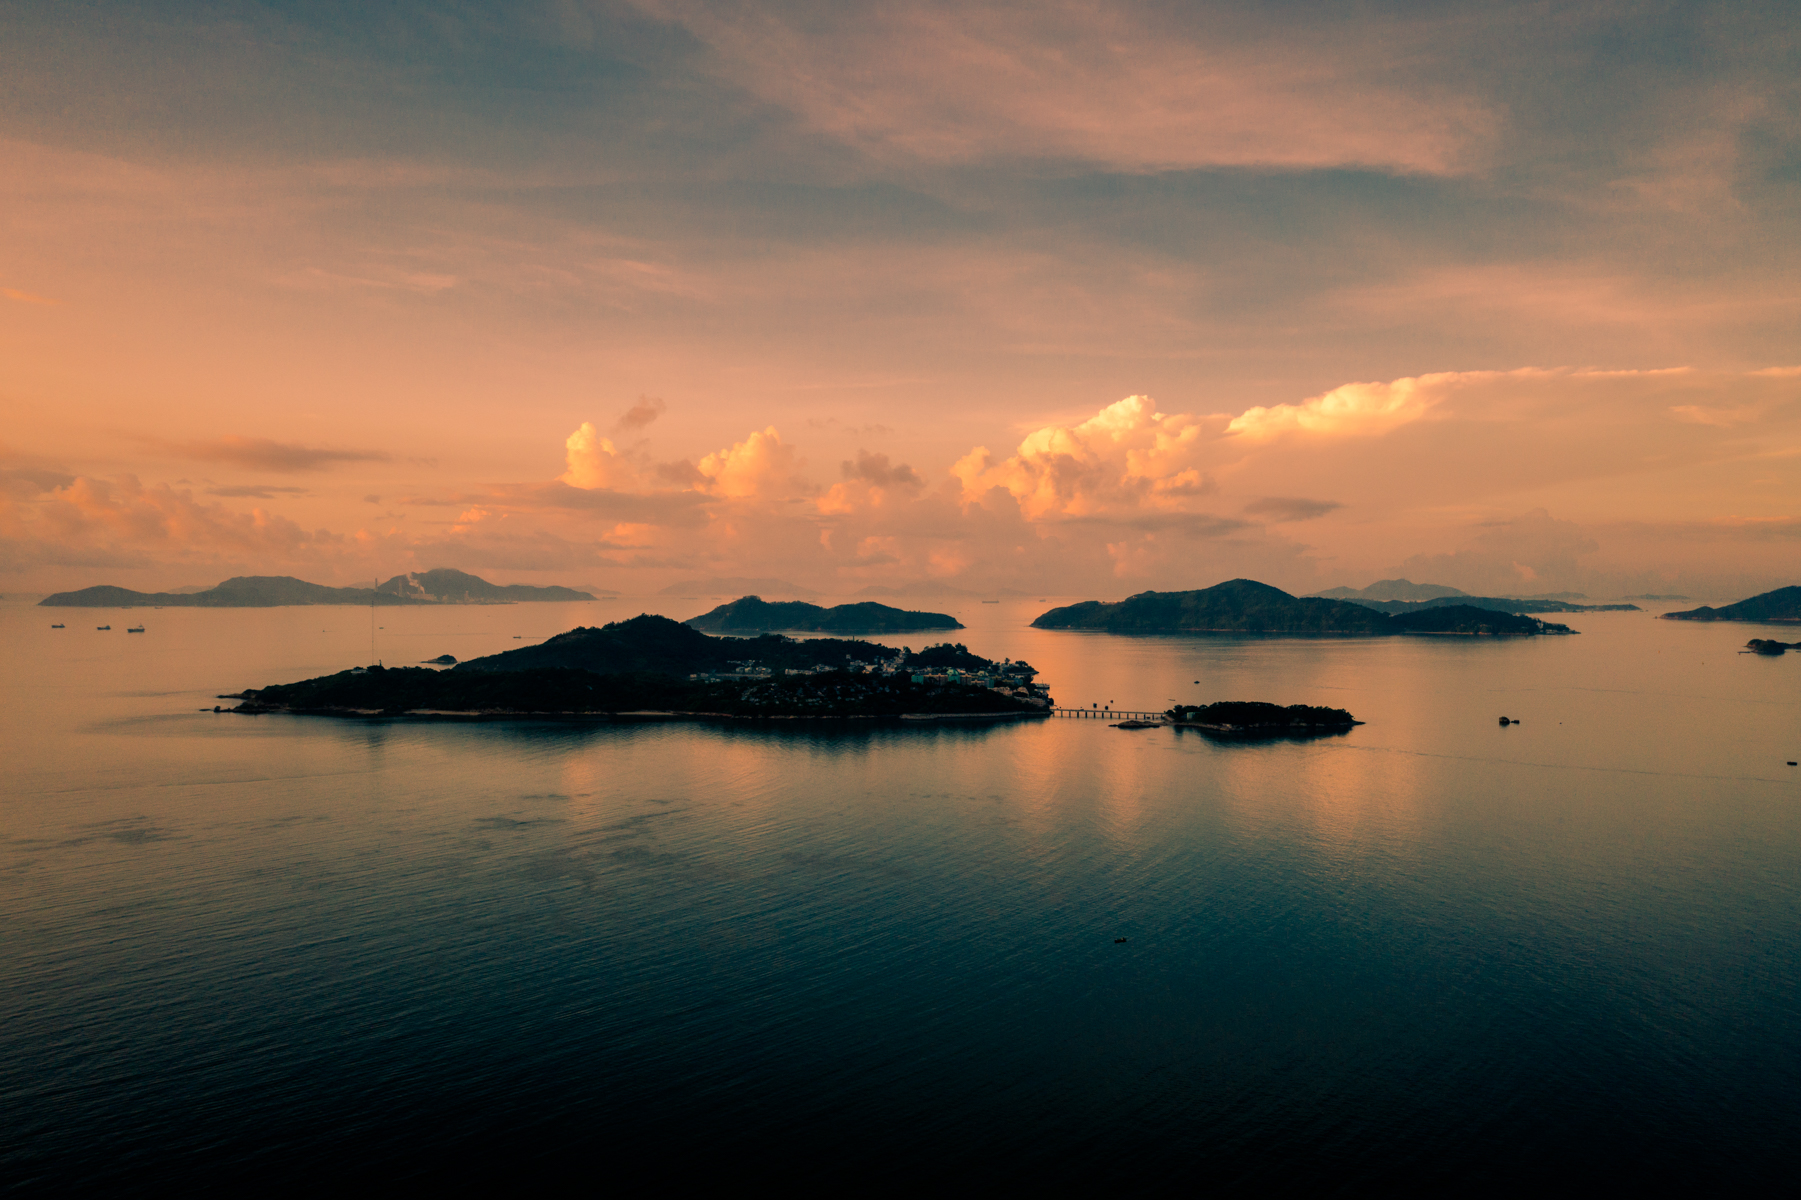 Peng Chau Island at sunset.